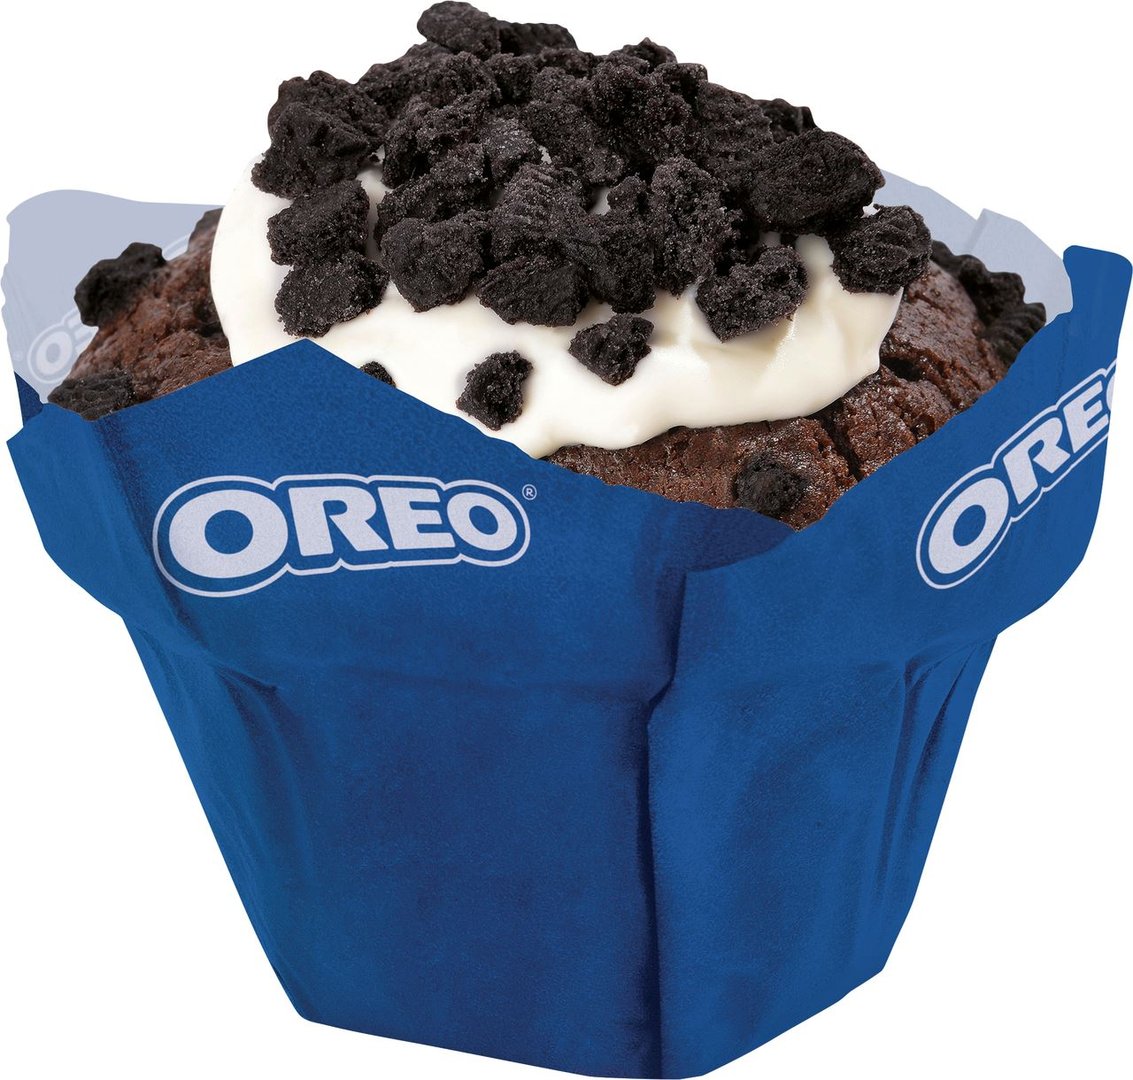 Oreo - Muffin gefüllt, Juni 2019 - 2 Stück à 110 g Packung